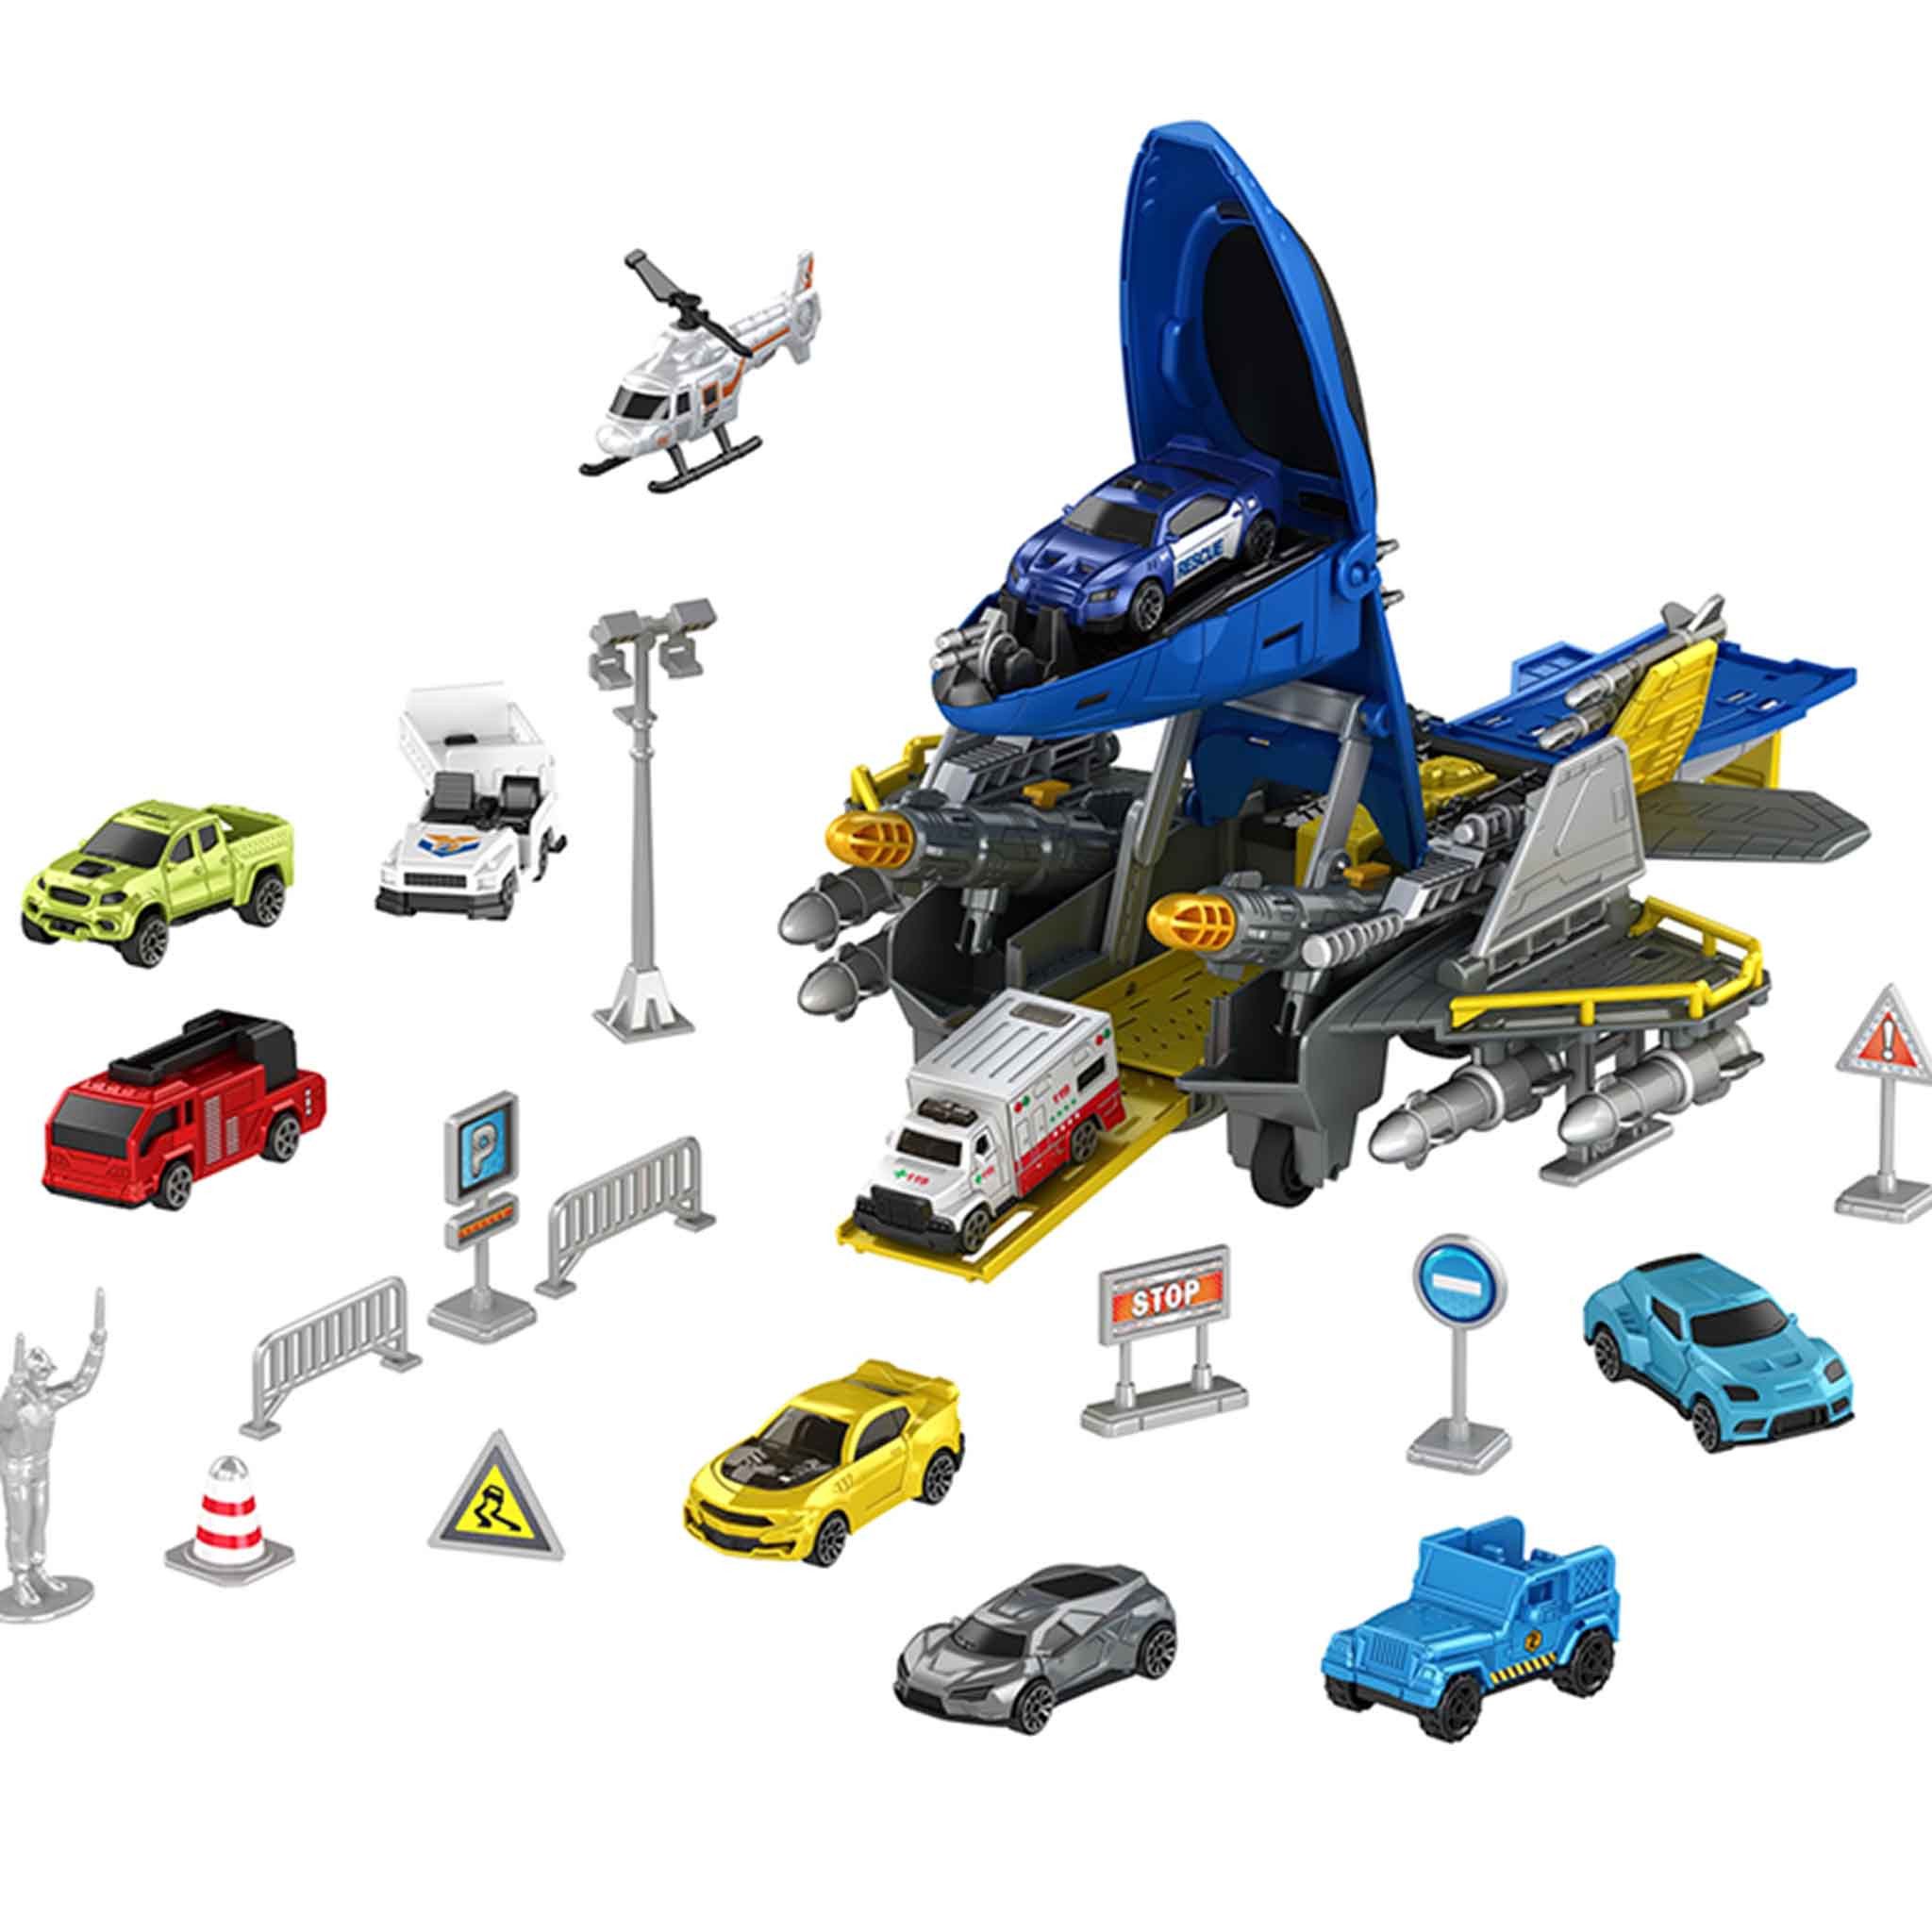 LBLA Spielzeug-Flugzeug Transport Flugzeug Spielzeug, (Transportflugzeug Spielzeugset, 24-tlg., Auto Spielzeug Hubschrauber Set für Kinder ab 3 Jahren), Ideales Geschenk für Jungen und Mädchen